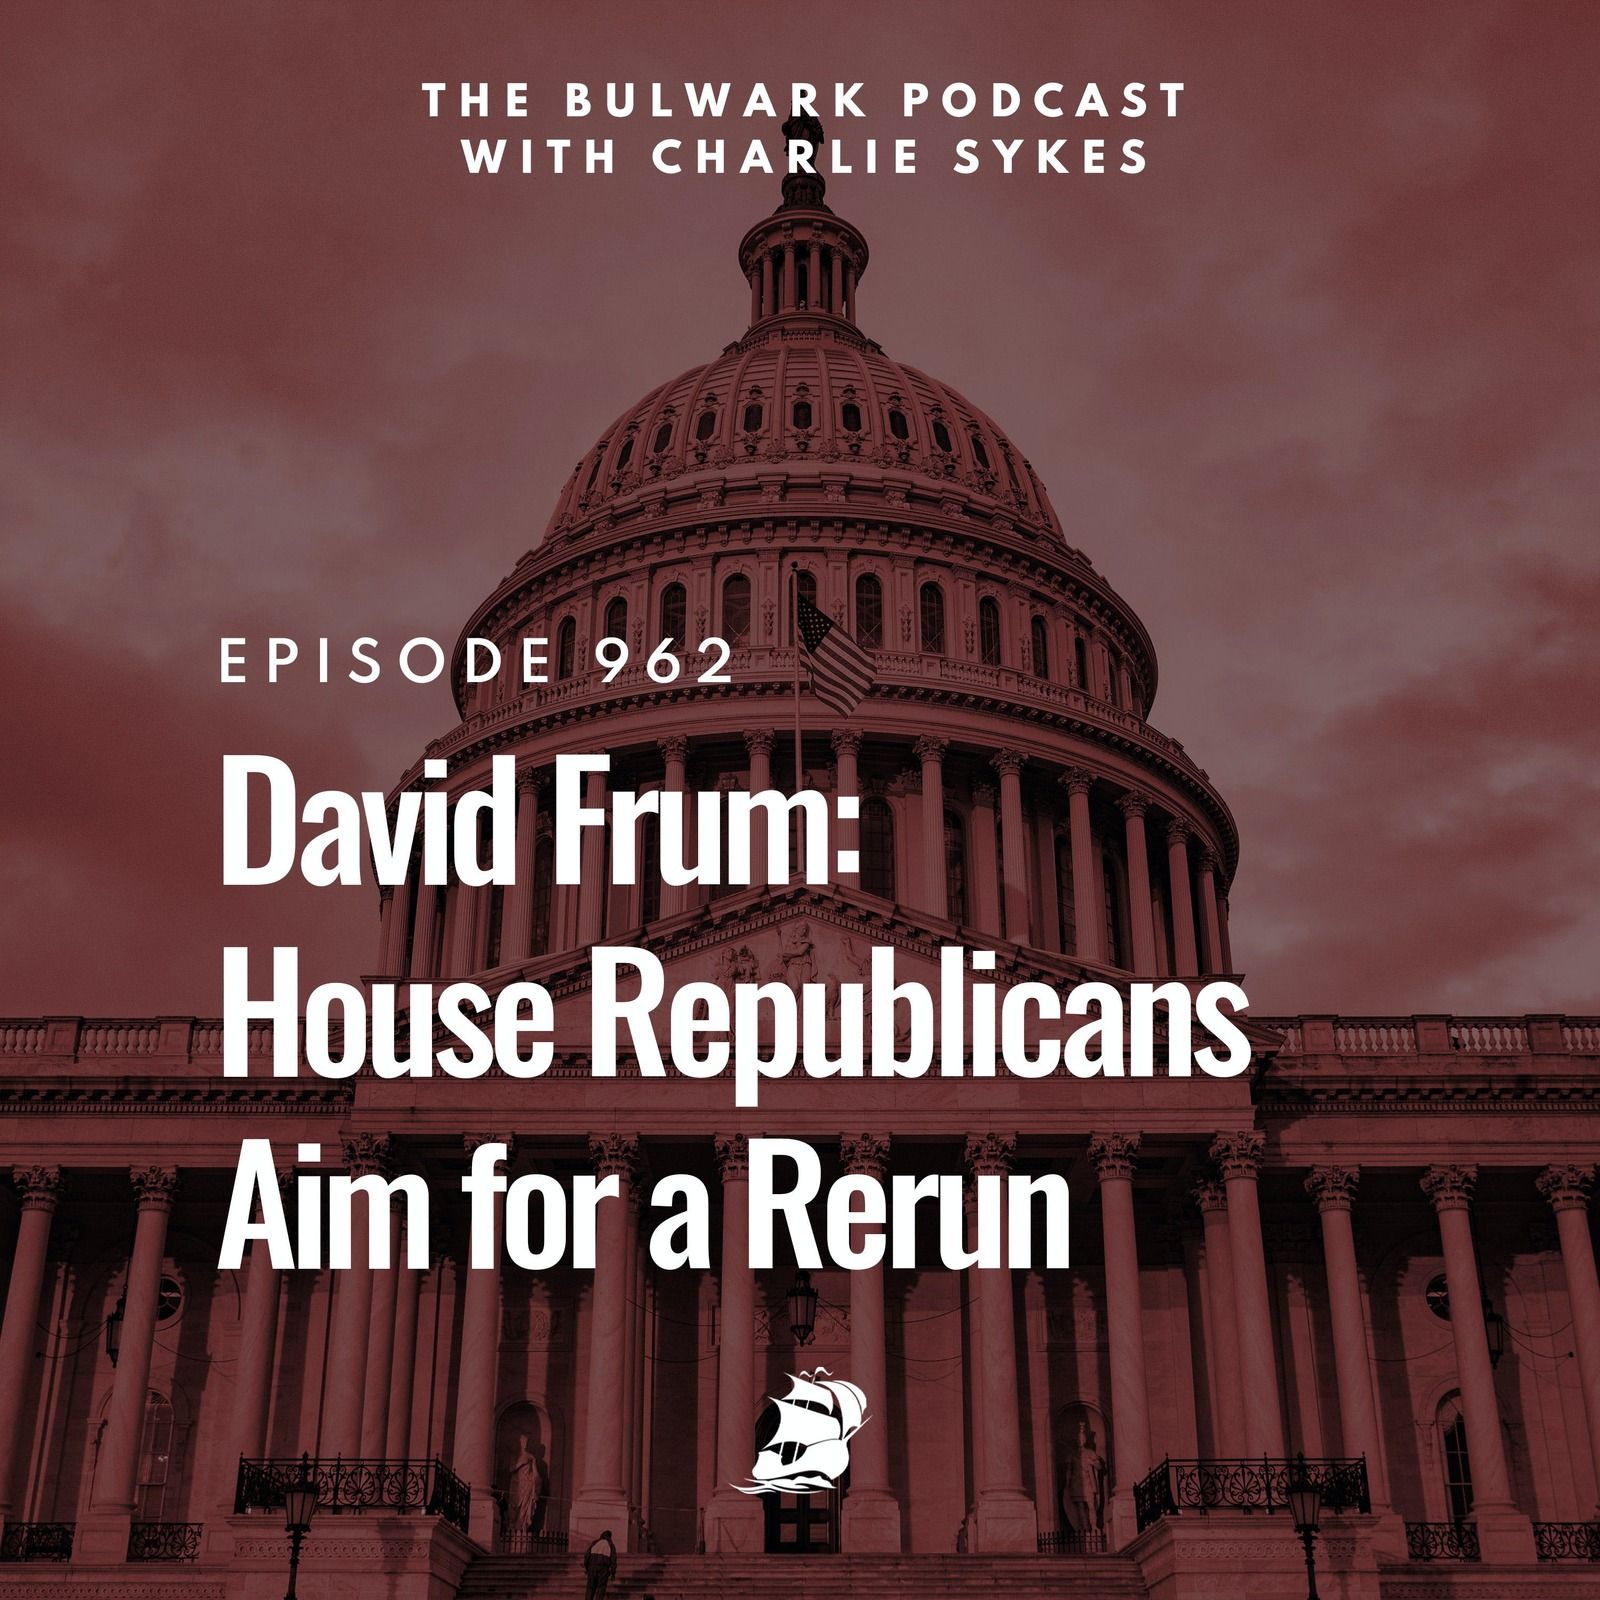 David Frum: House Republicans Aim for a Rerun